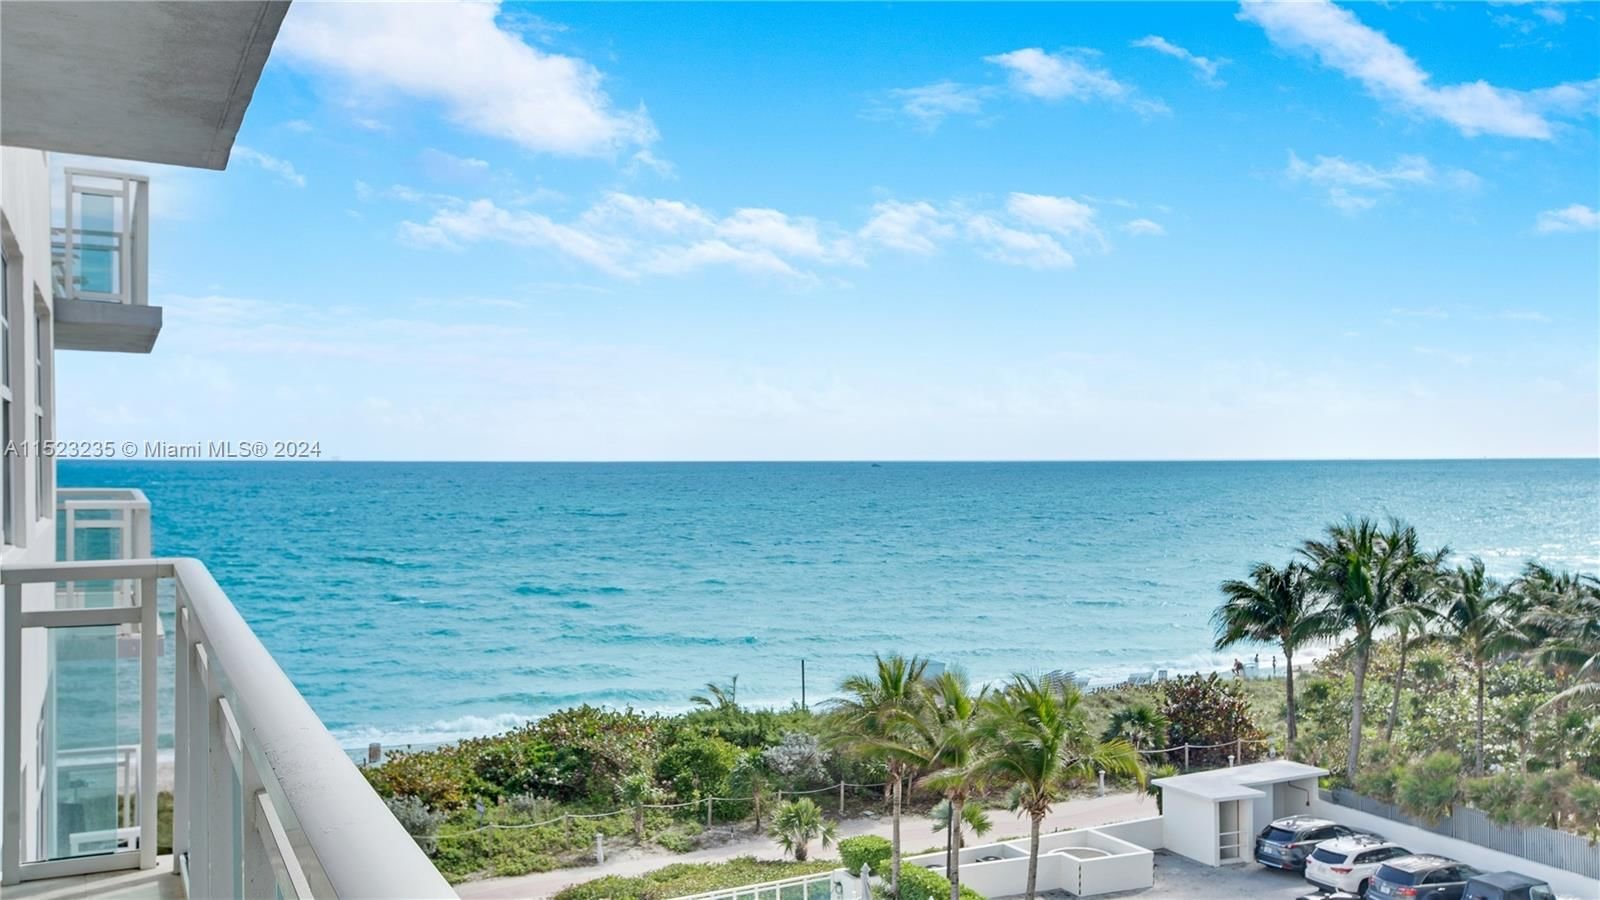 Real estate property located at 6917 Collins Ave #705, Miami-Dade County, THE COLLINS CONDO, Miami Beach, FL